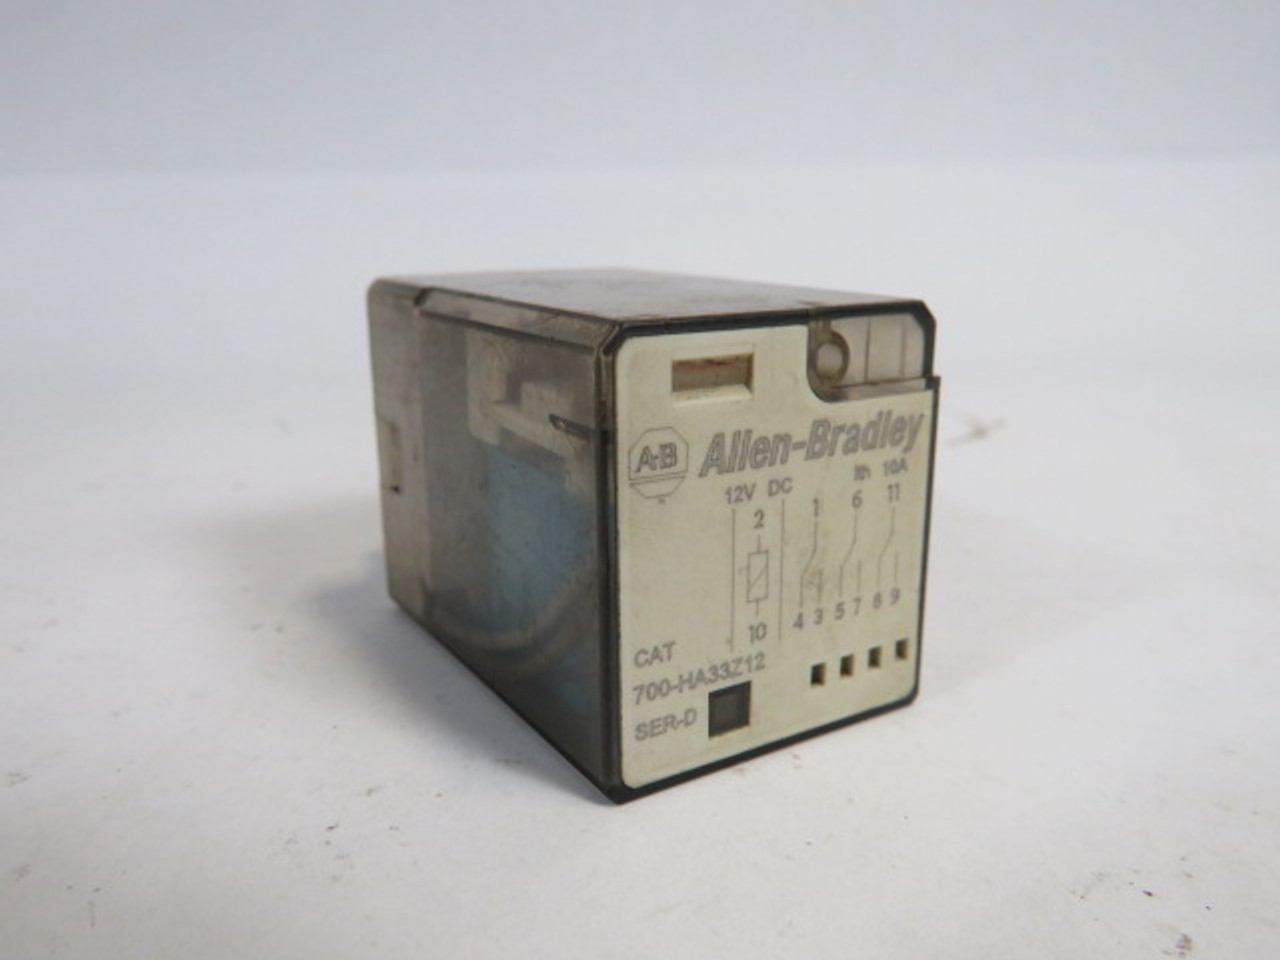 Allen-Bradley 700-HA33Z12 Relay SER D 12VDC 10A USED